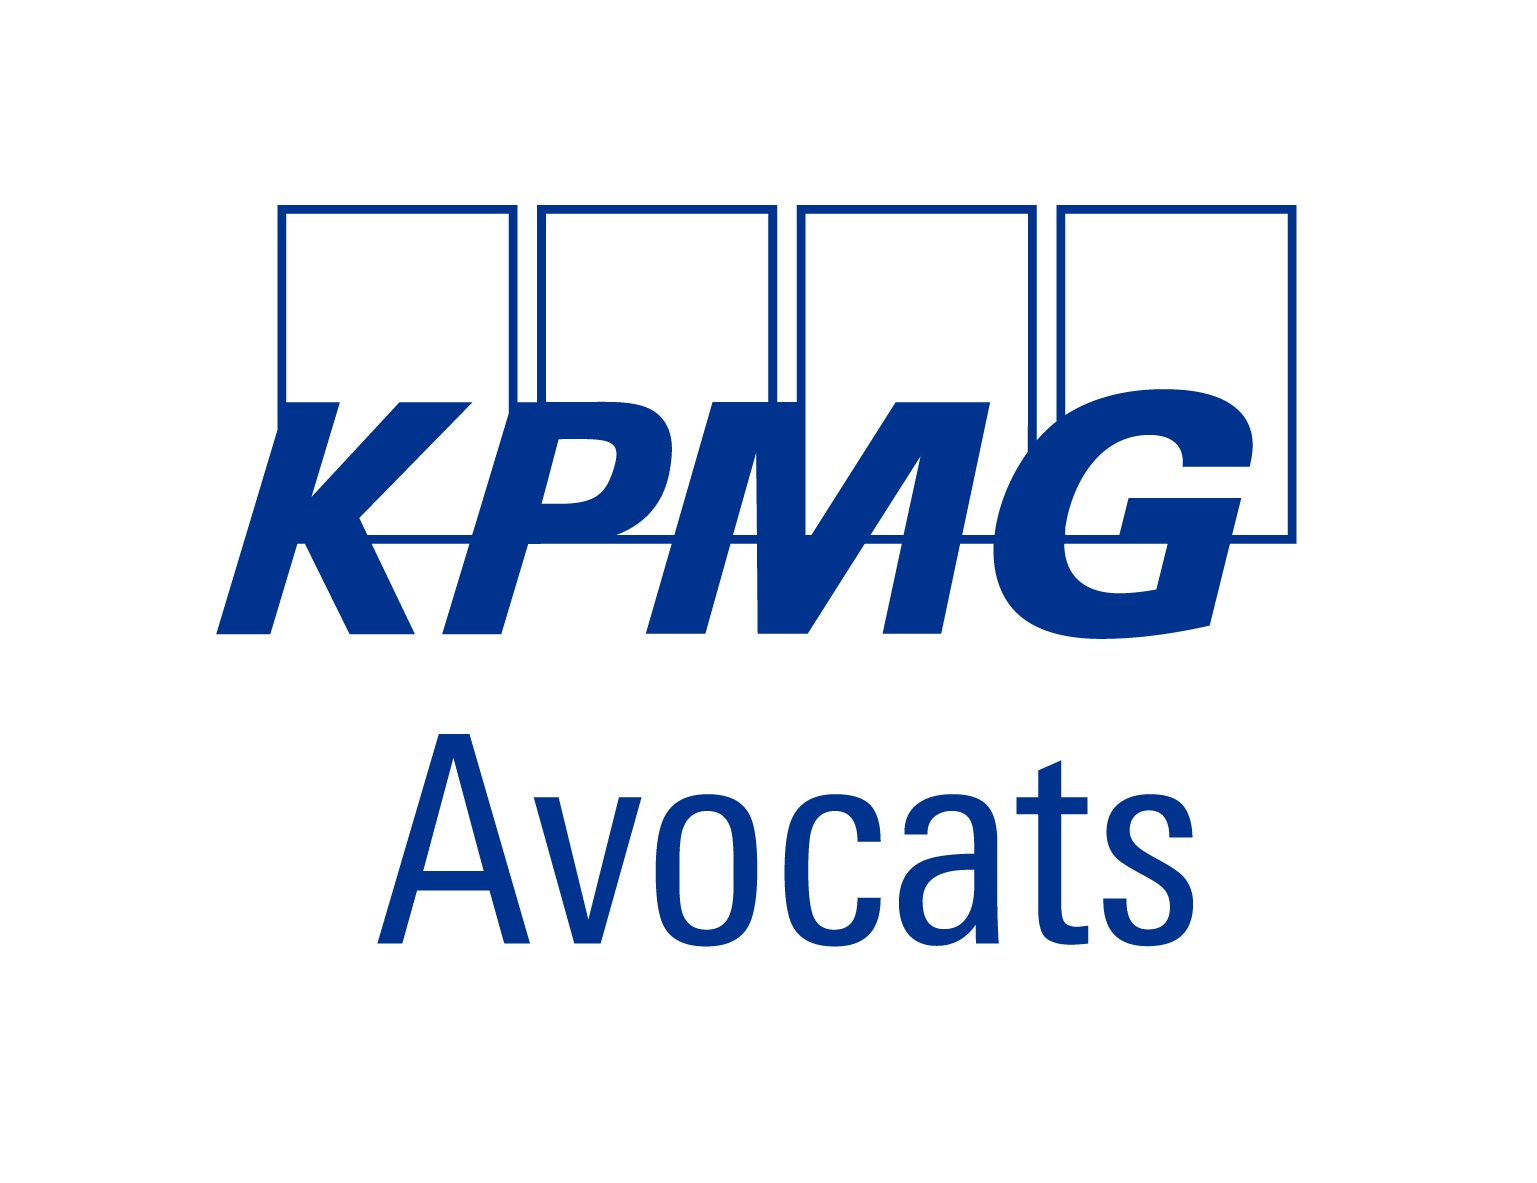 KPMG Avocats